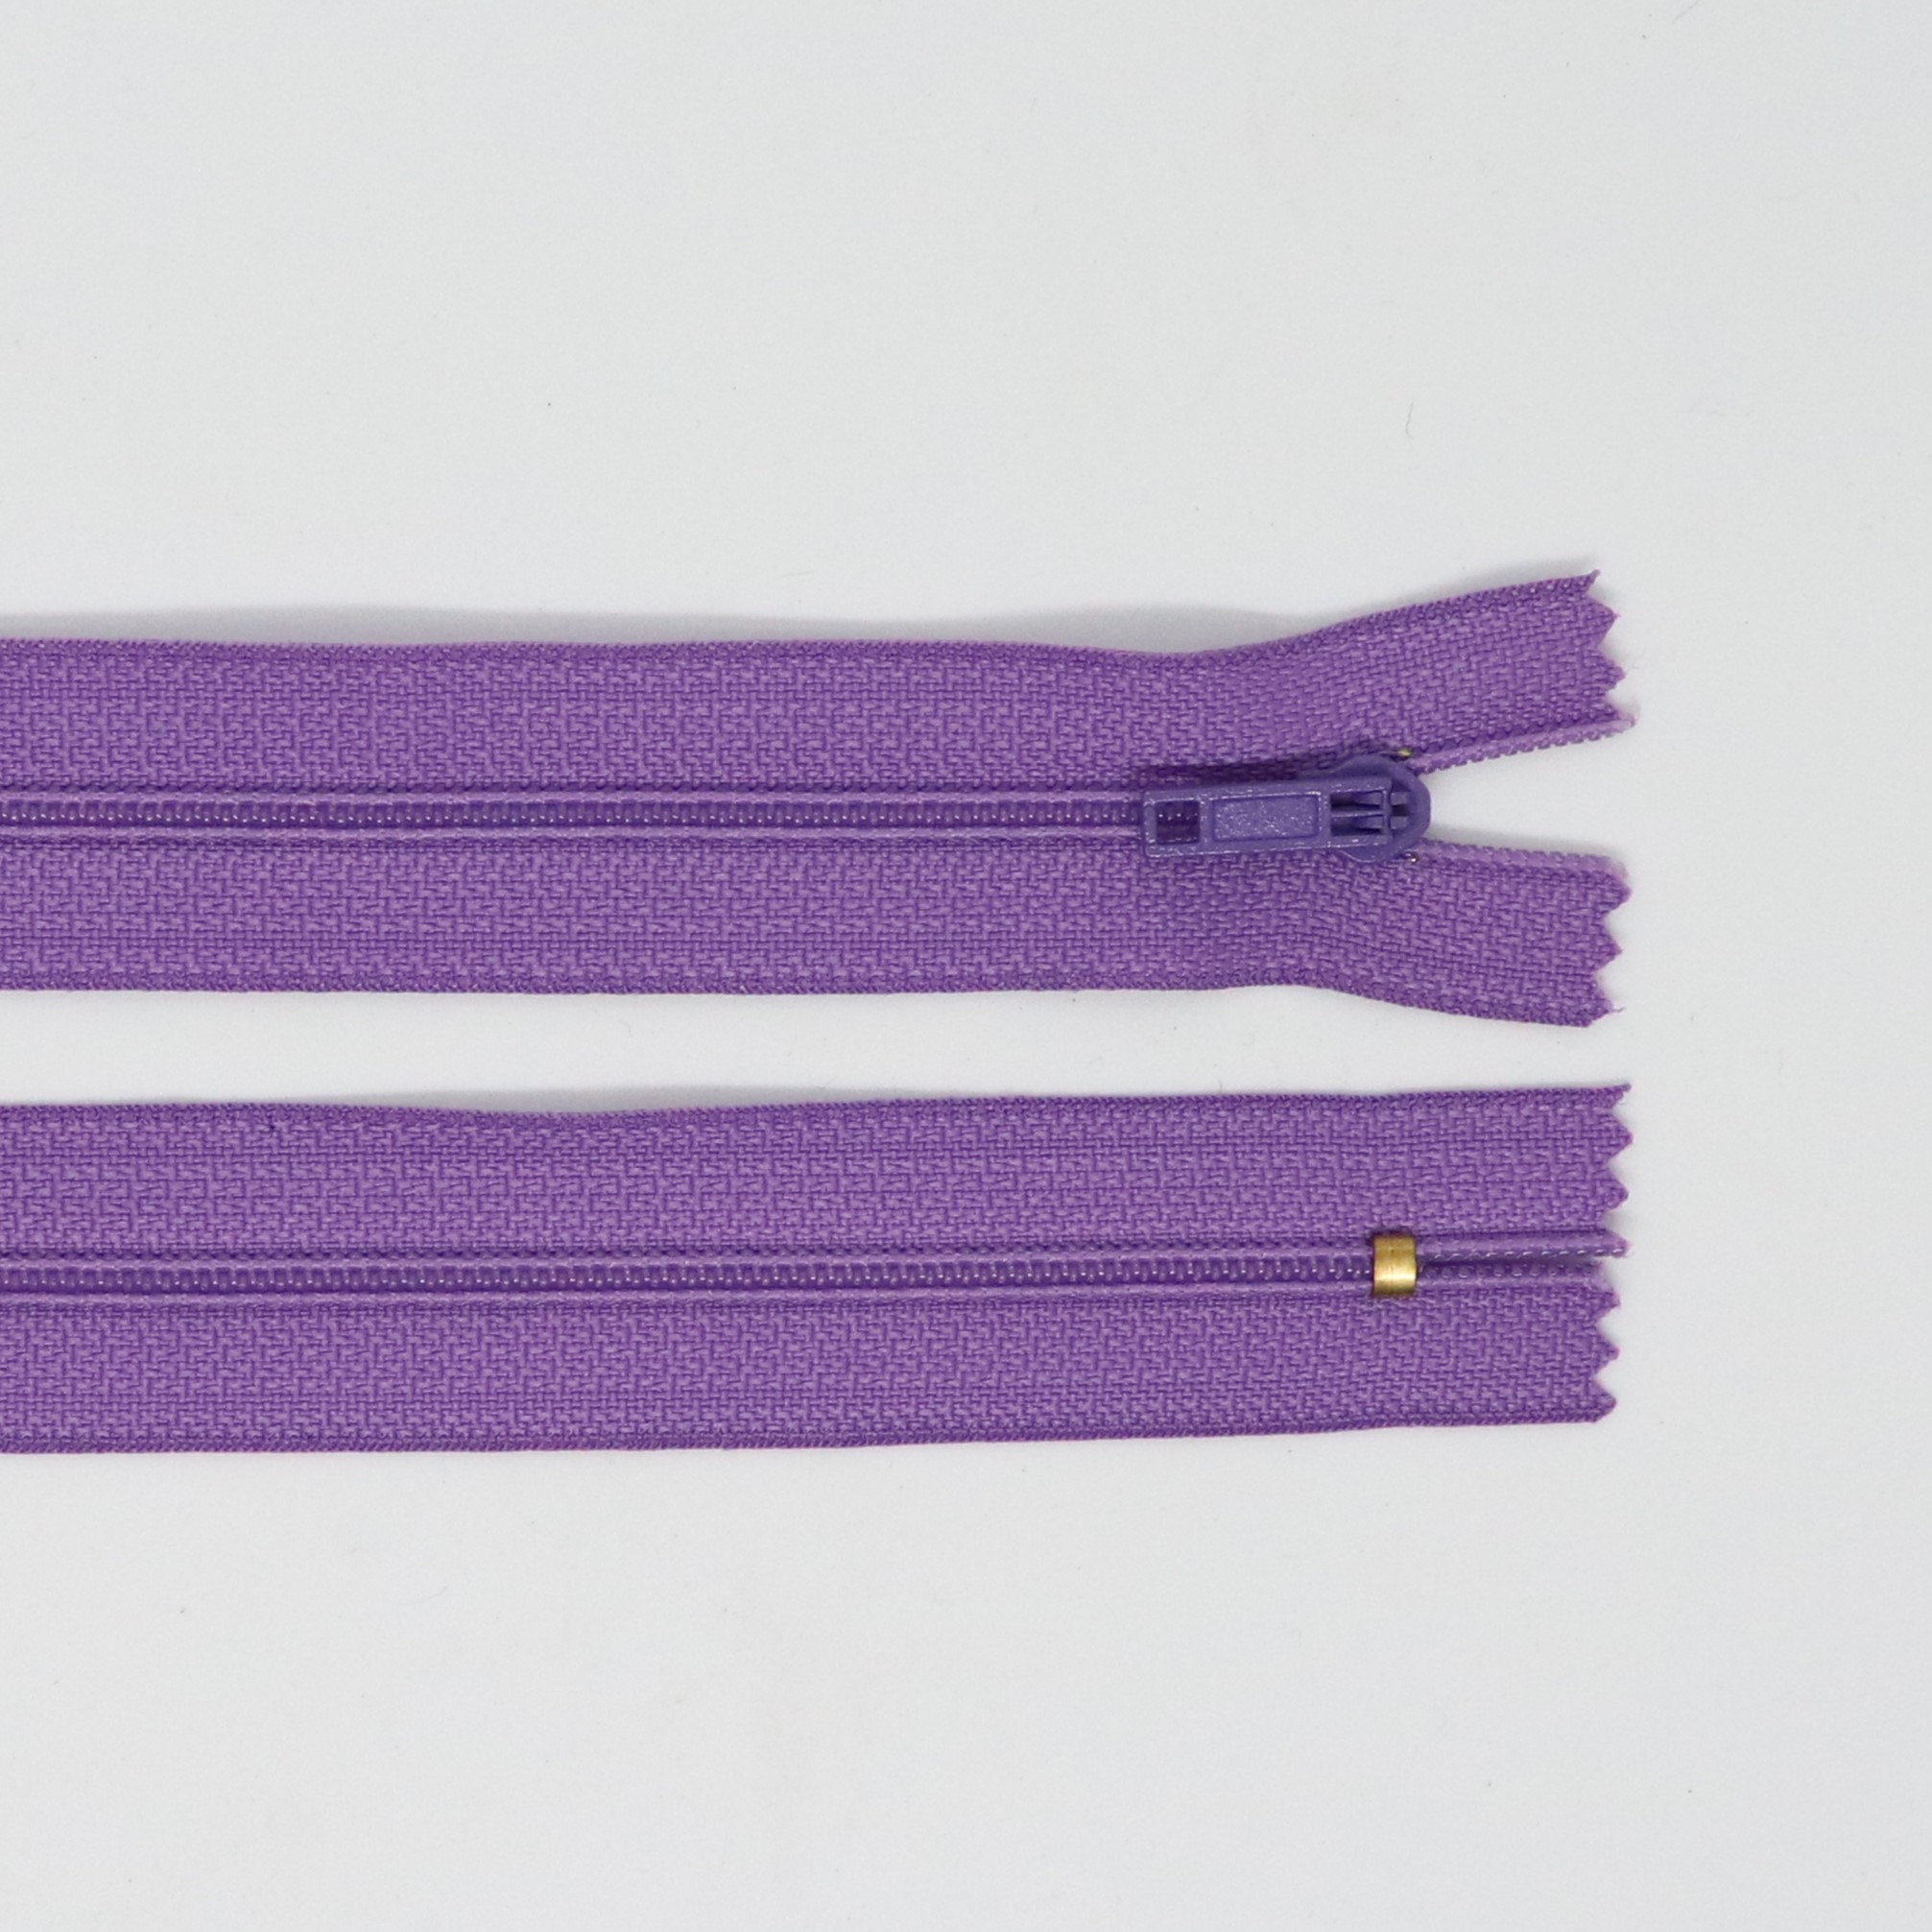 Spirálový zip, šíøe 3 mm, délka 55 cm, fialová - zvìtšit obrázek